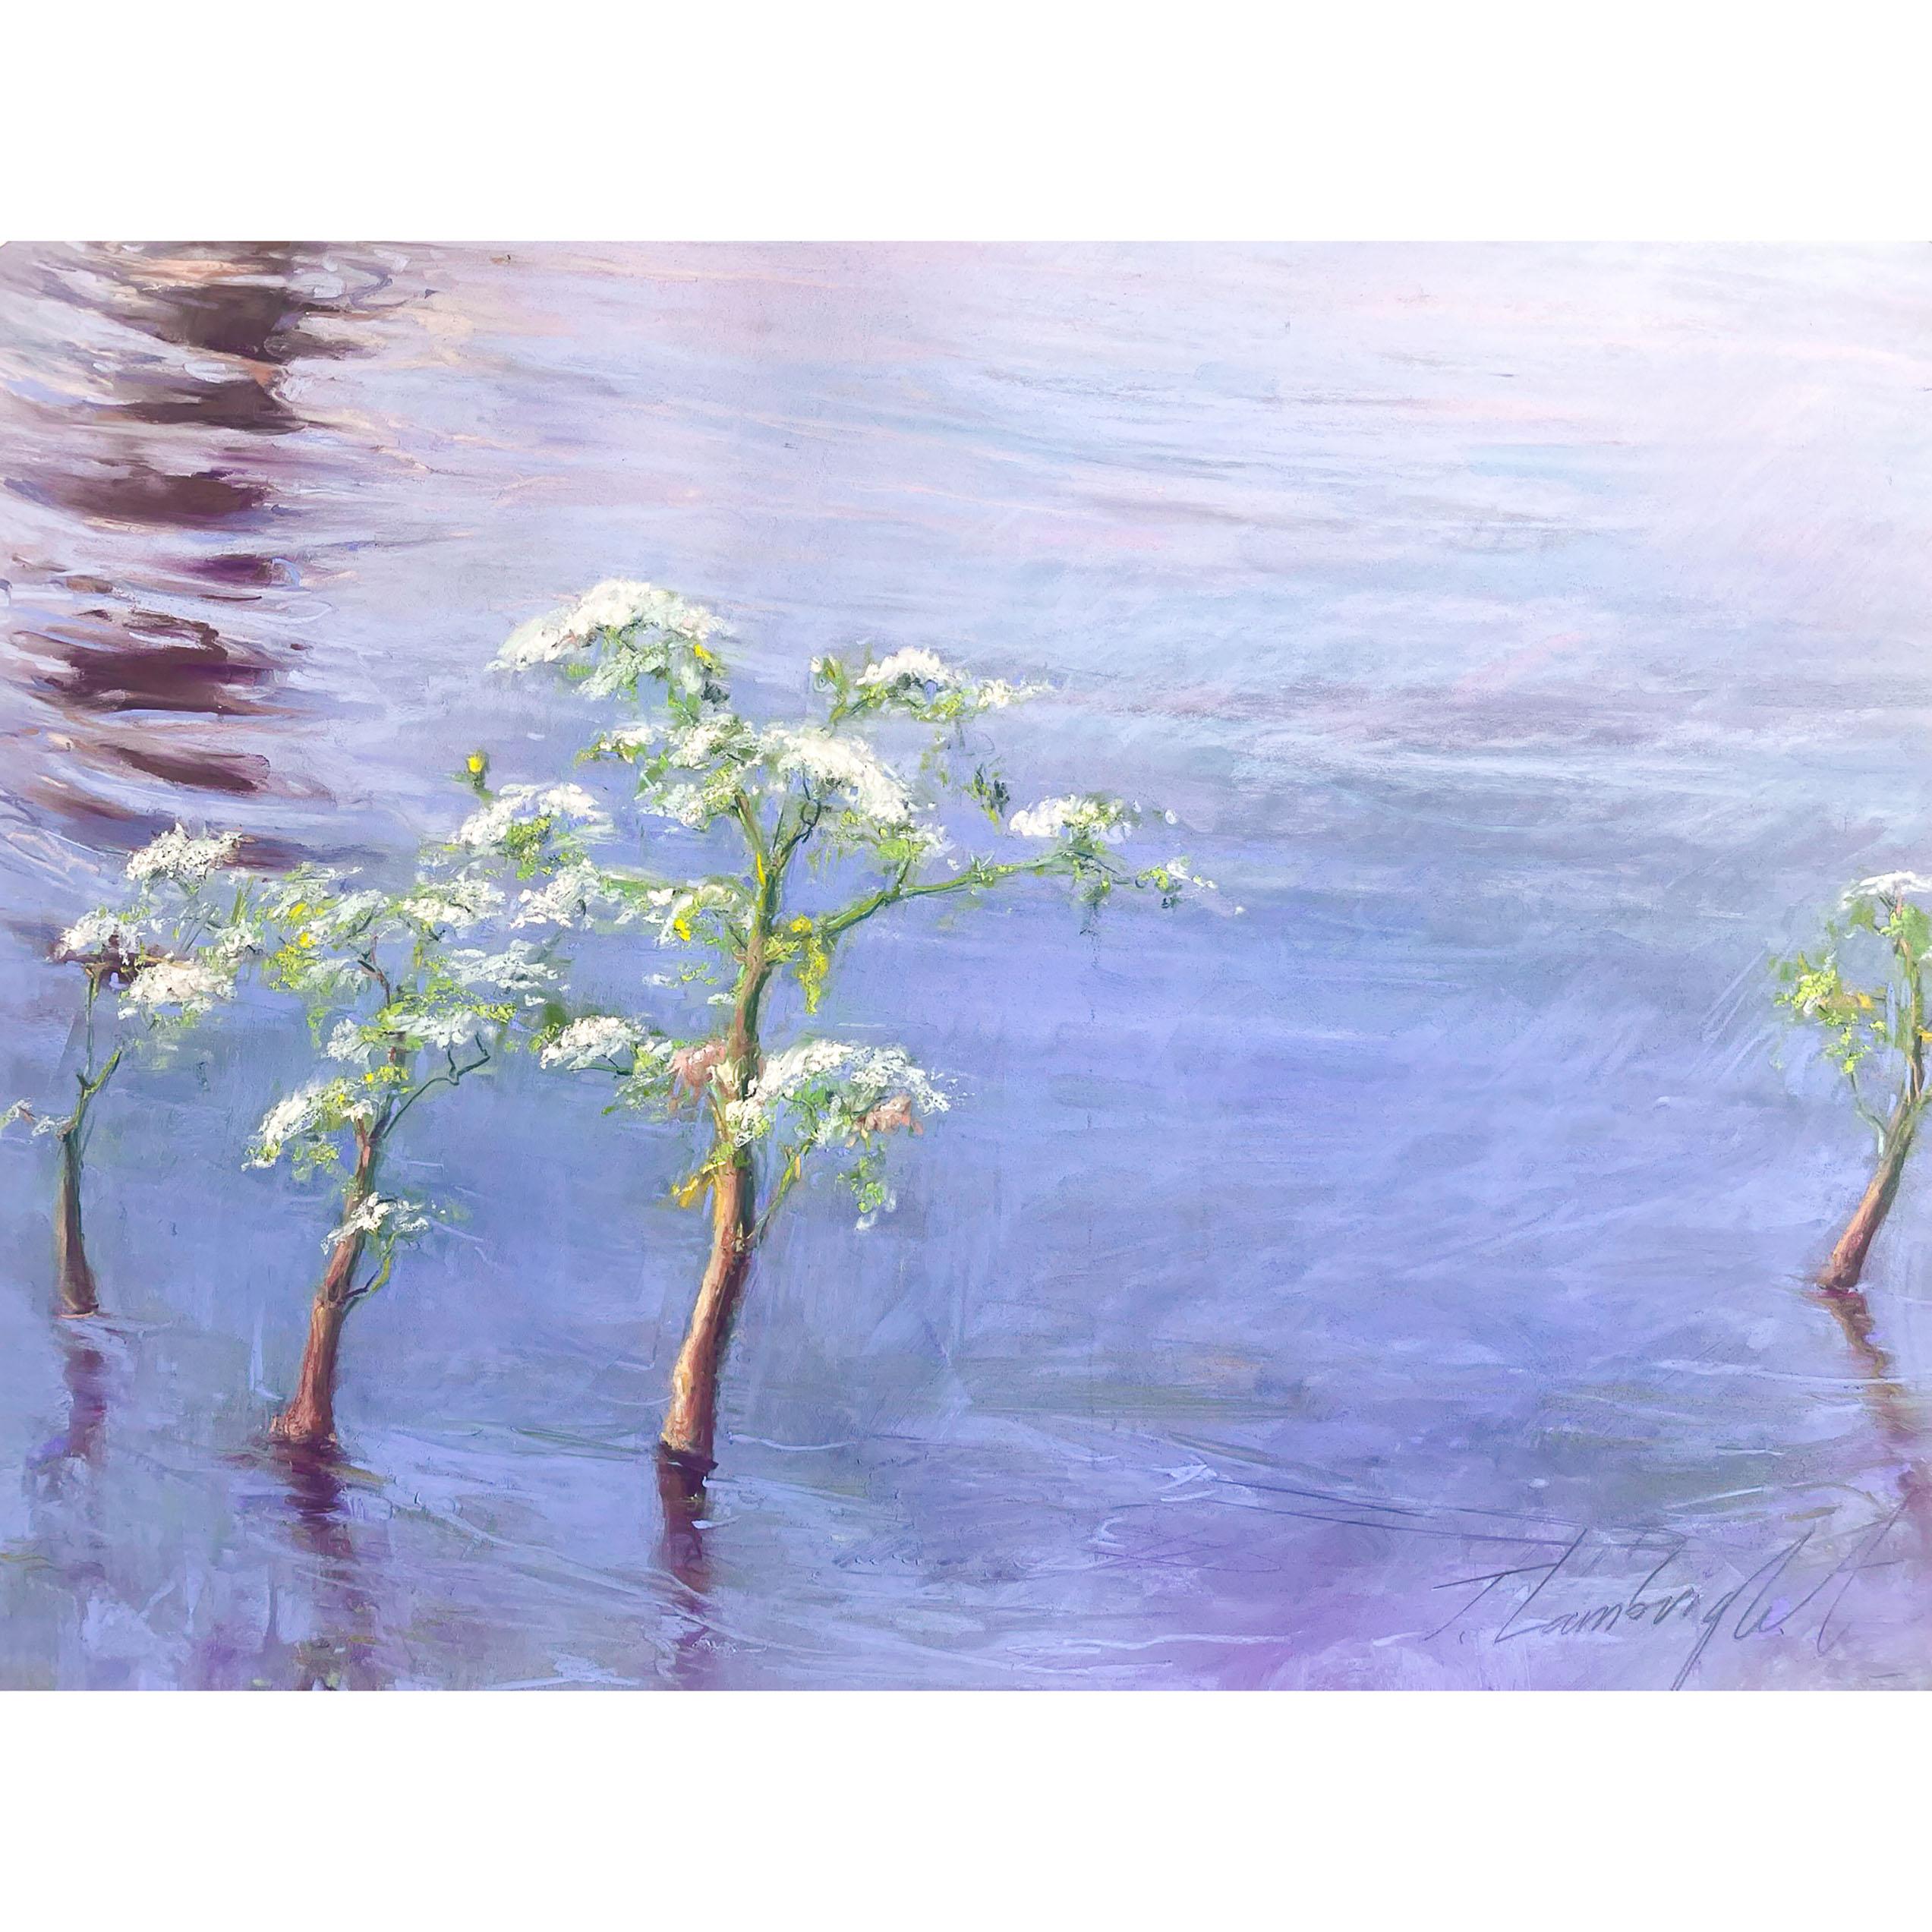 Julia Lambright
Misty Lace
Soft pastel on pastelmat
Image size: 12.5” x 17.5”
Framed size: 19.5” x 25.5”
2023